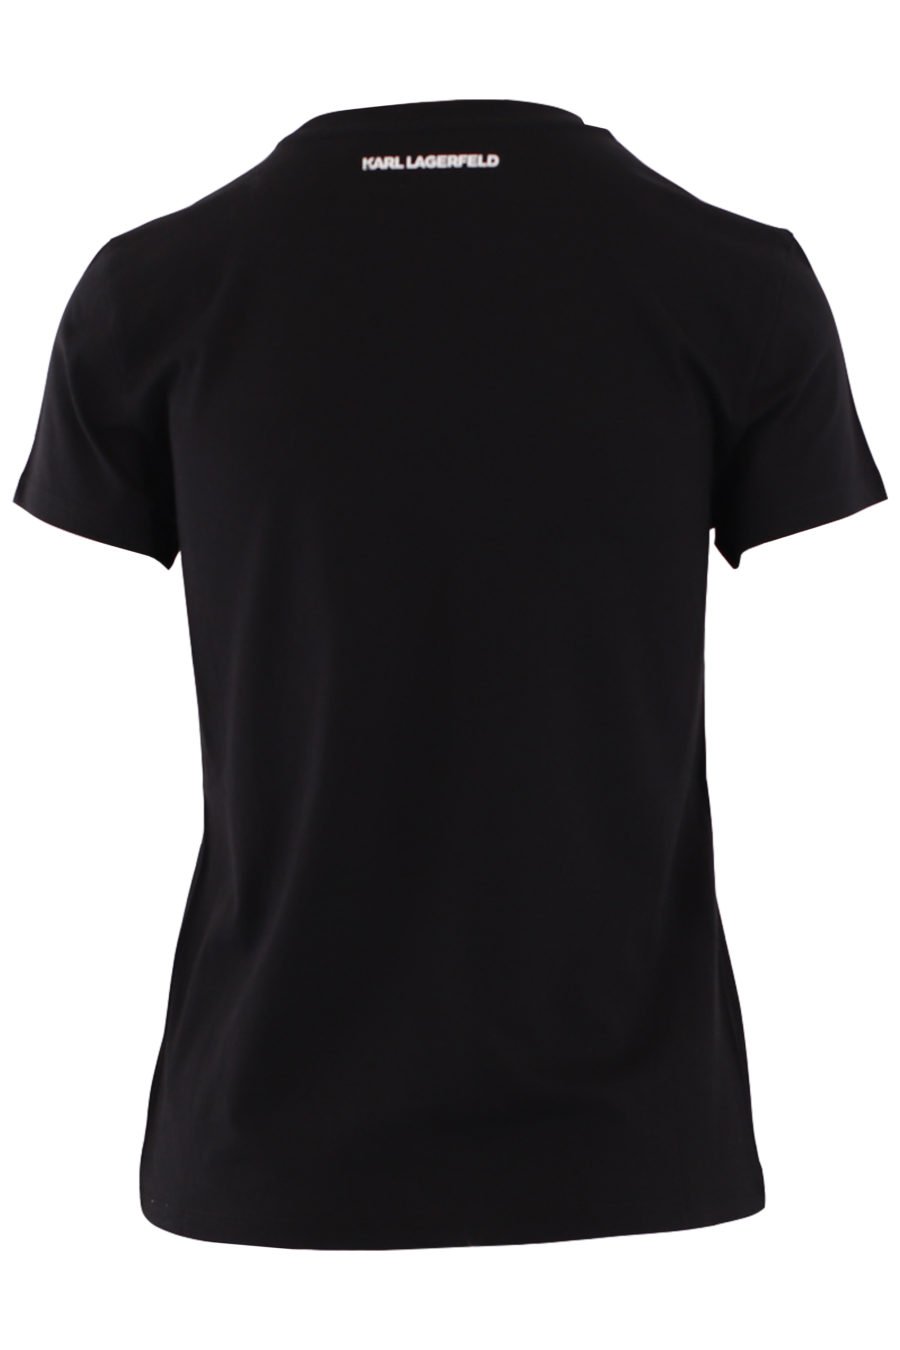 Camiseta negra con logo grande en strass - IMG 9011